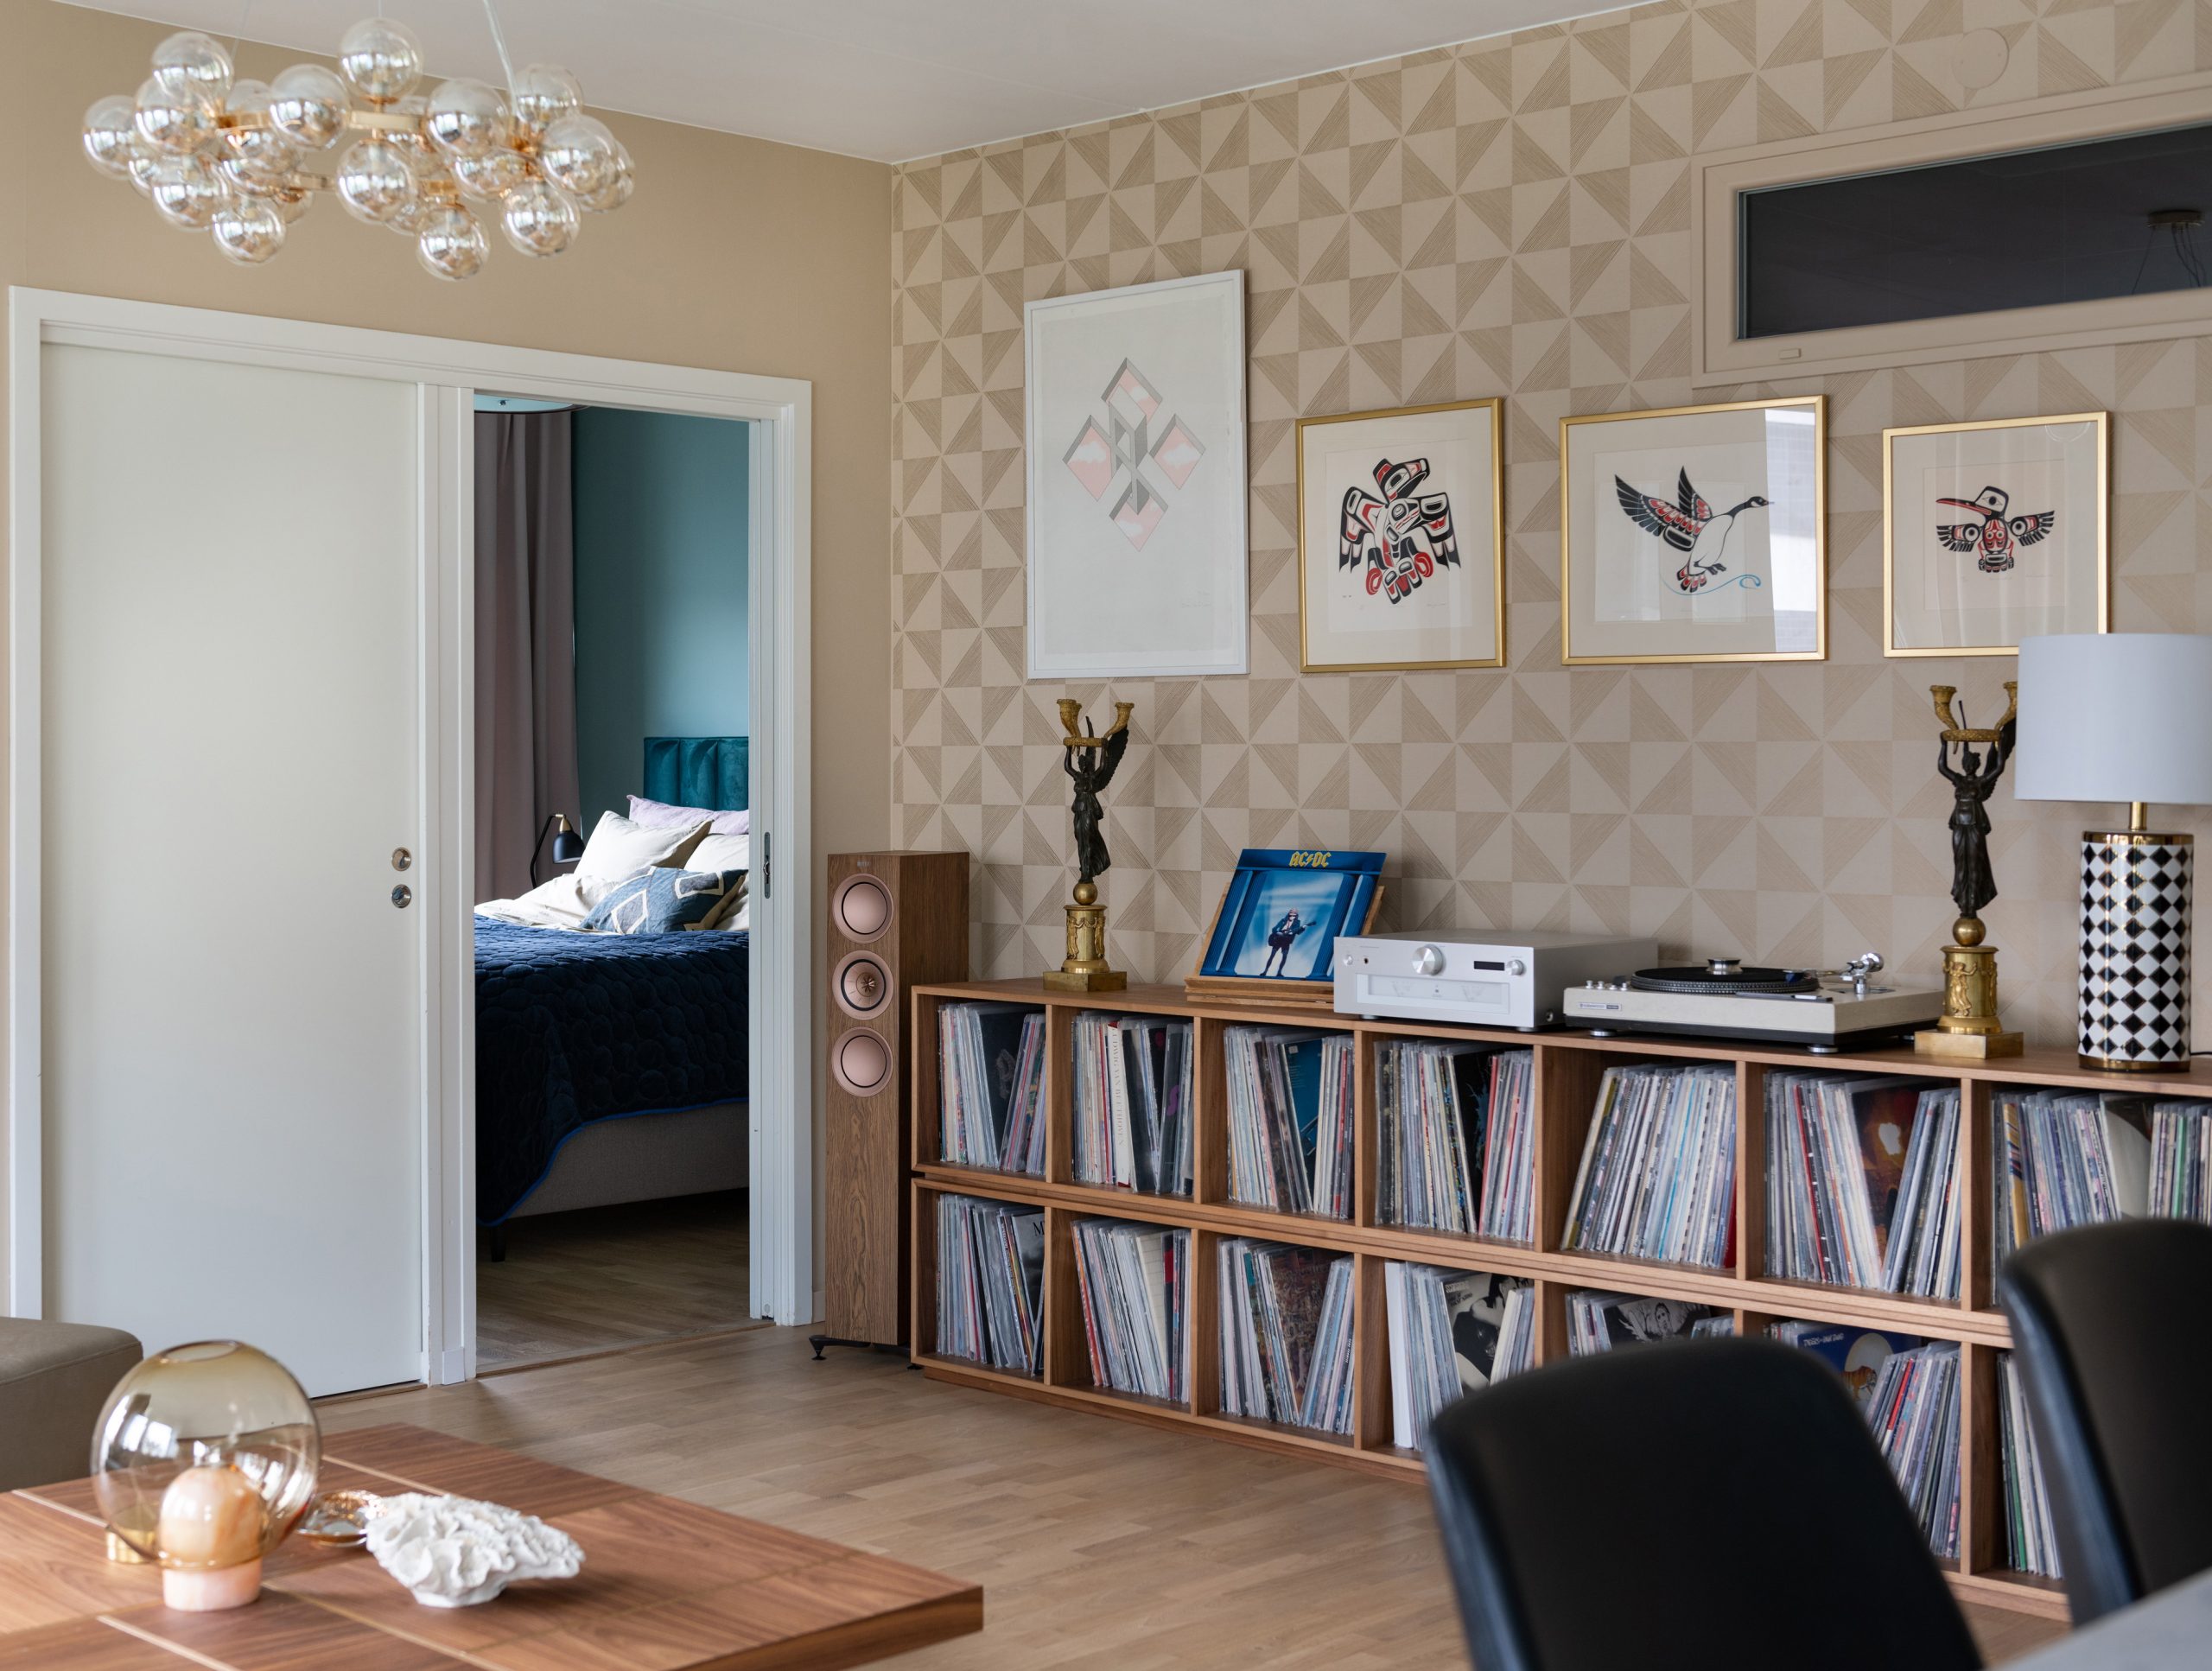 Vinylförvaring platsbyggd i valnöt, vardagsrum, taklampa, glas, bordslampa, soffbord.